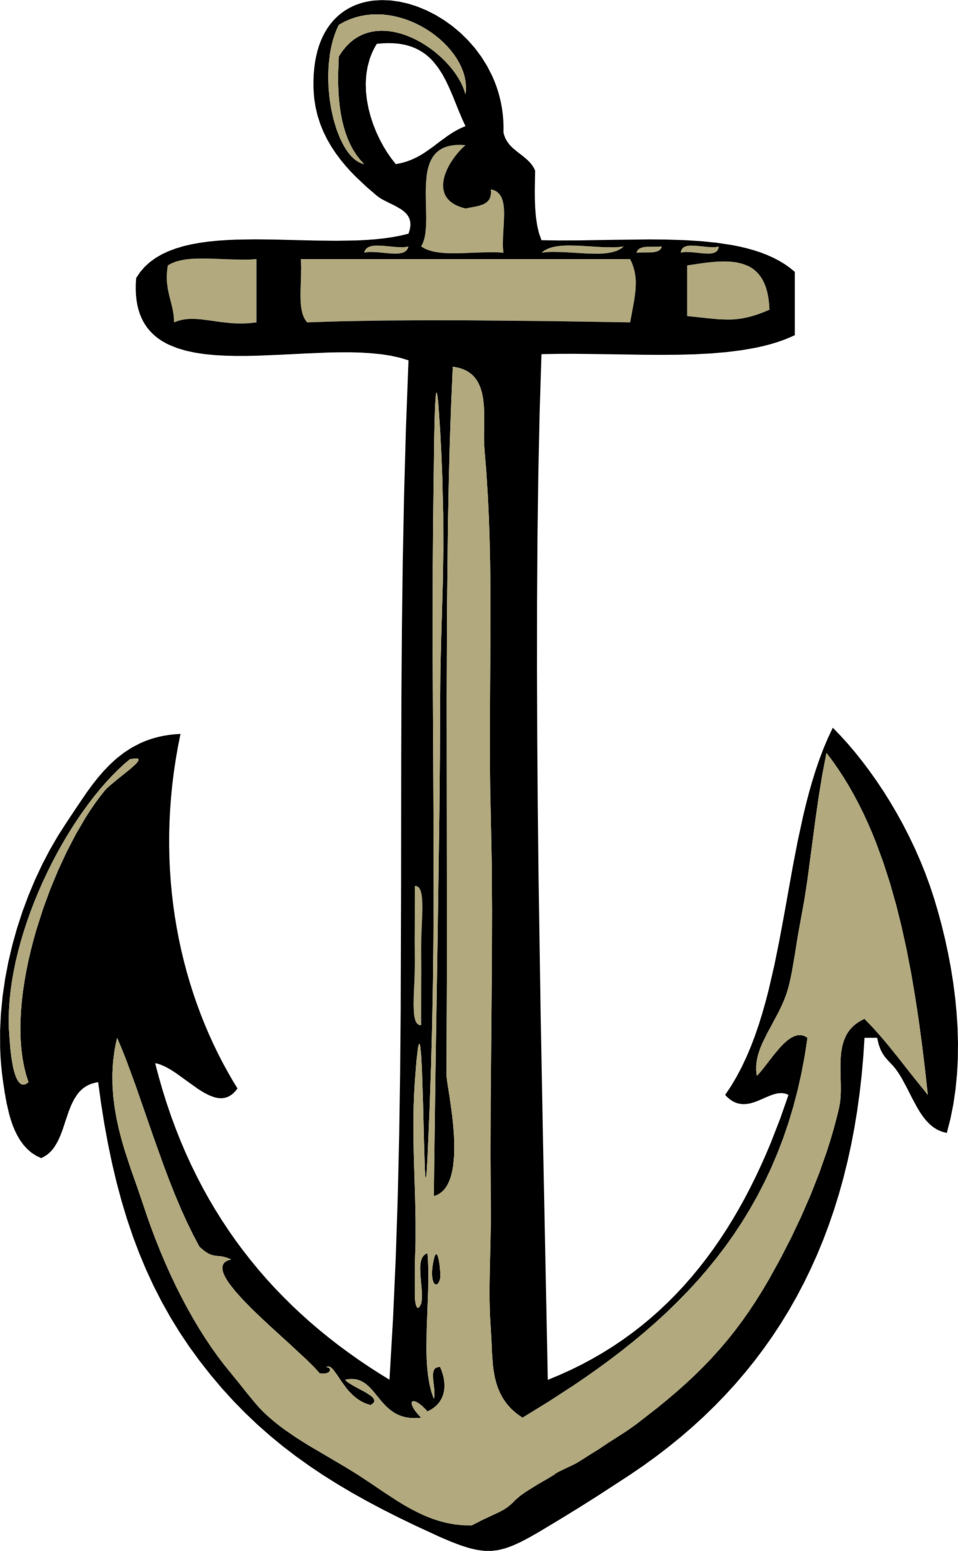 An Anchor - Anchor (958x1551)